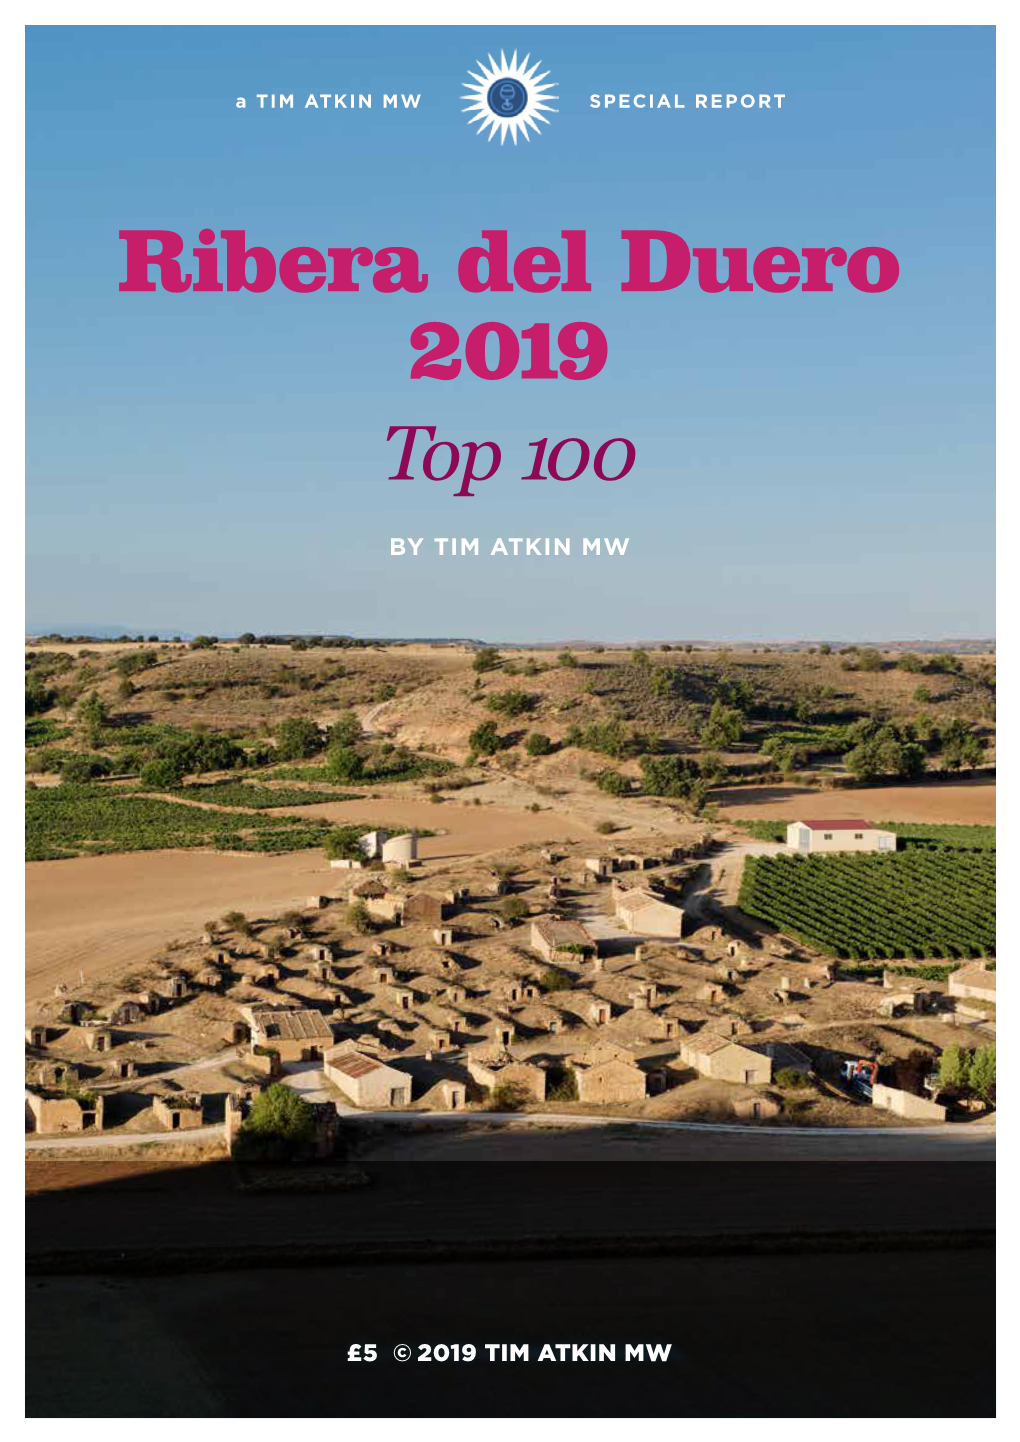 RIBERA DEL DUERO 2019 TOP 100 Contents